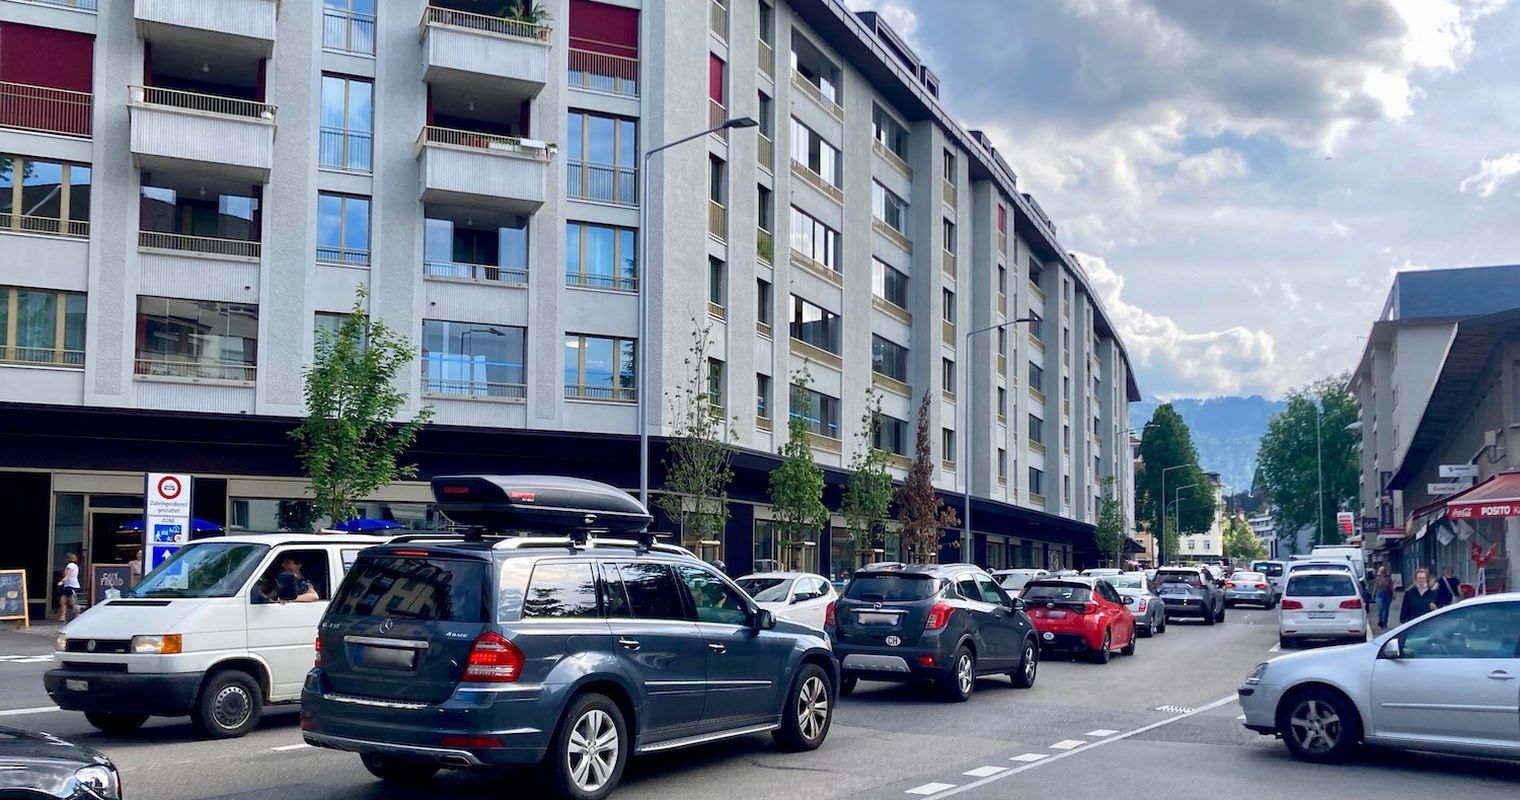 Klimaneutraler Verkehr: Luzern ist meilenweit entfernt